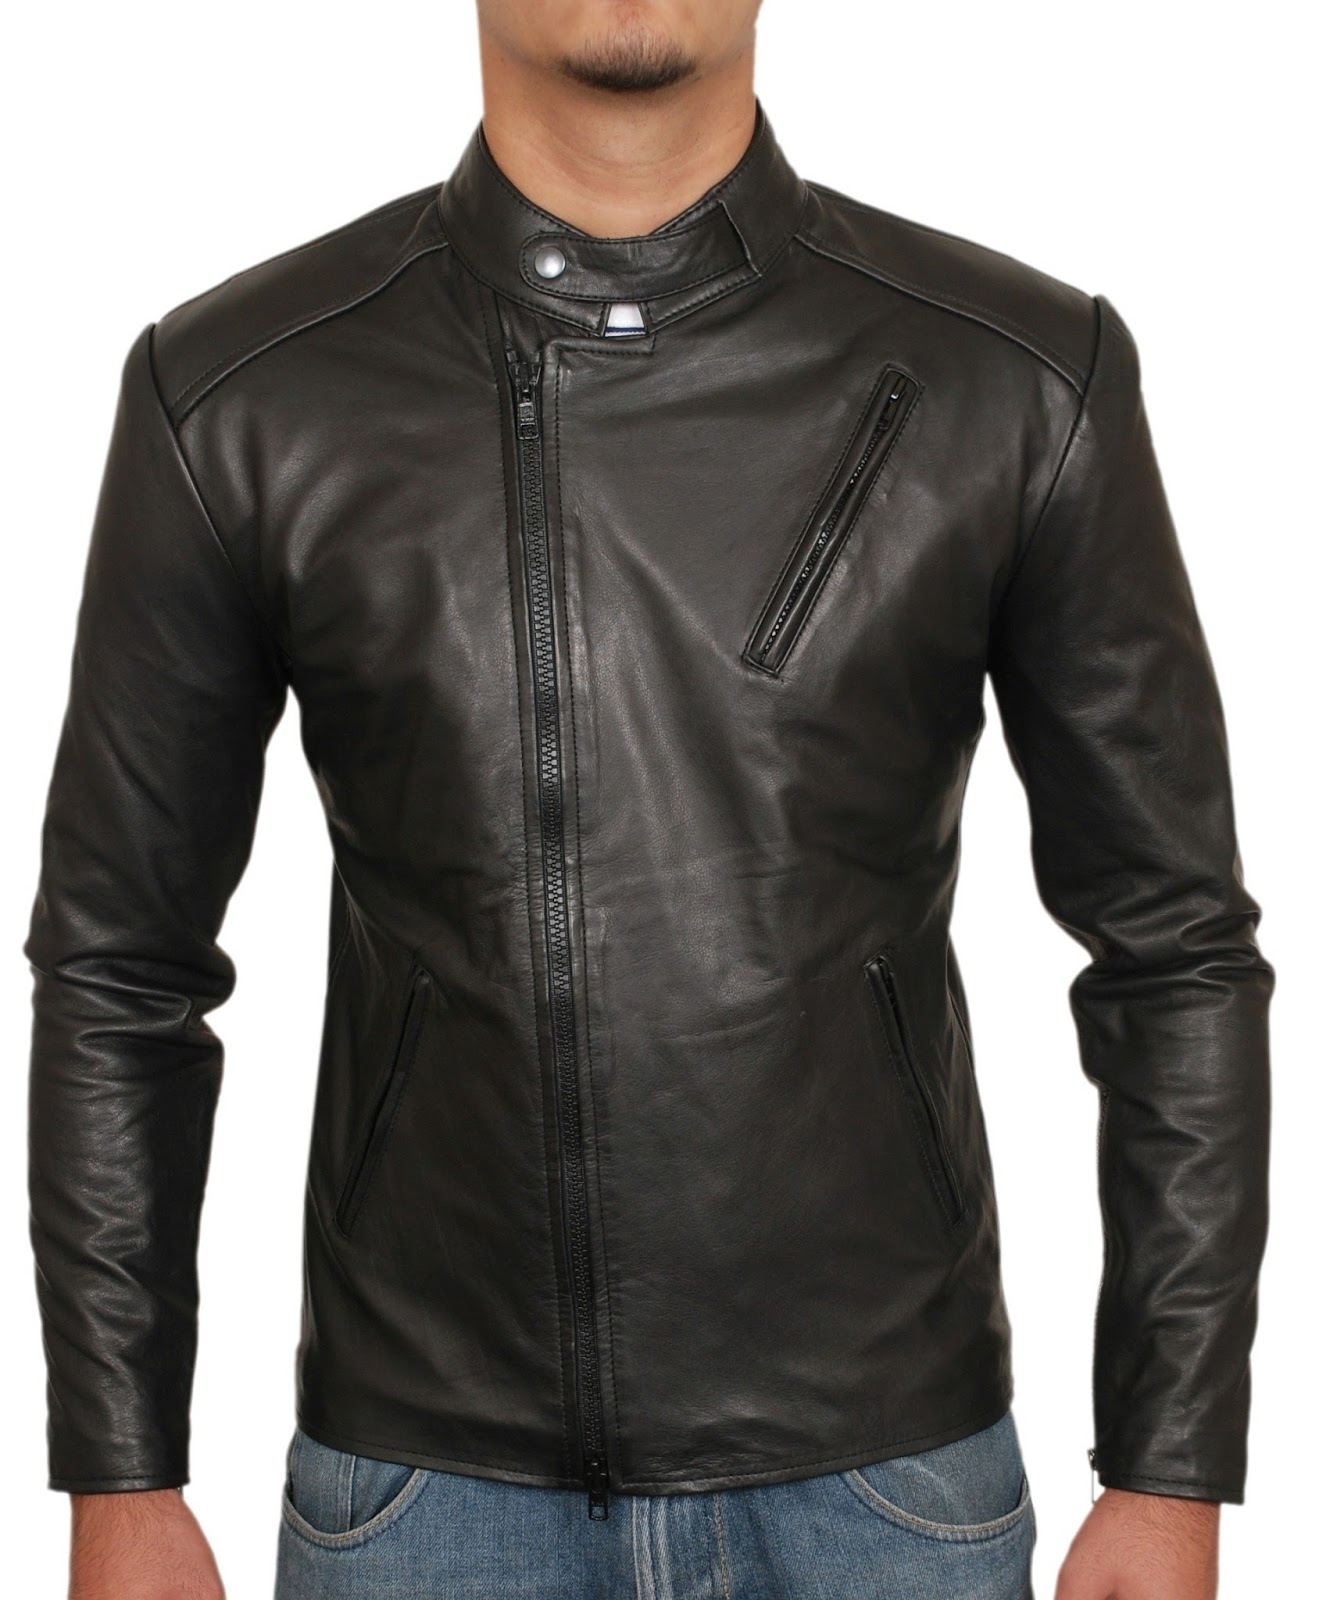 Men Leather Jackets: Iron Man Leather Jacket